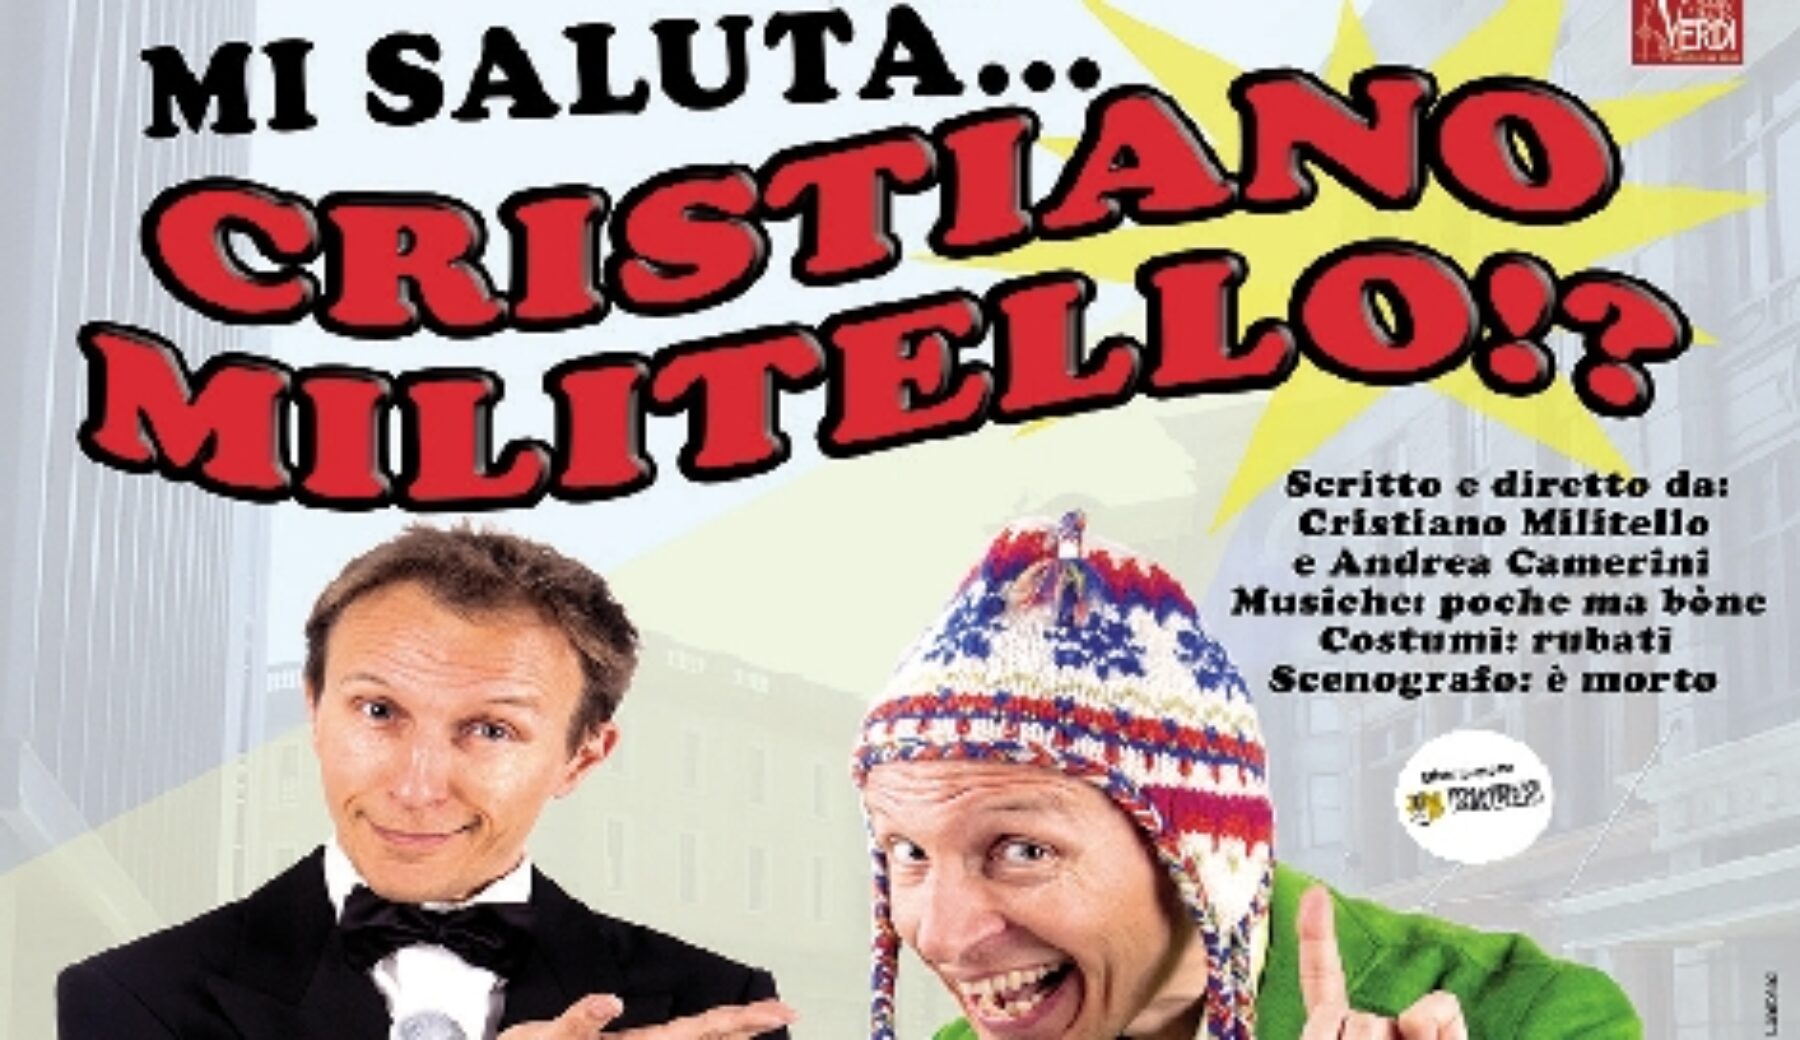 Mi saluta… Cristiano Militello? – Teatro Centrolucia Botticino (BS) – venerdì 15 aprile.